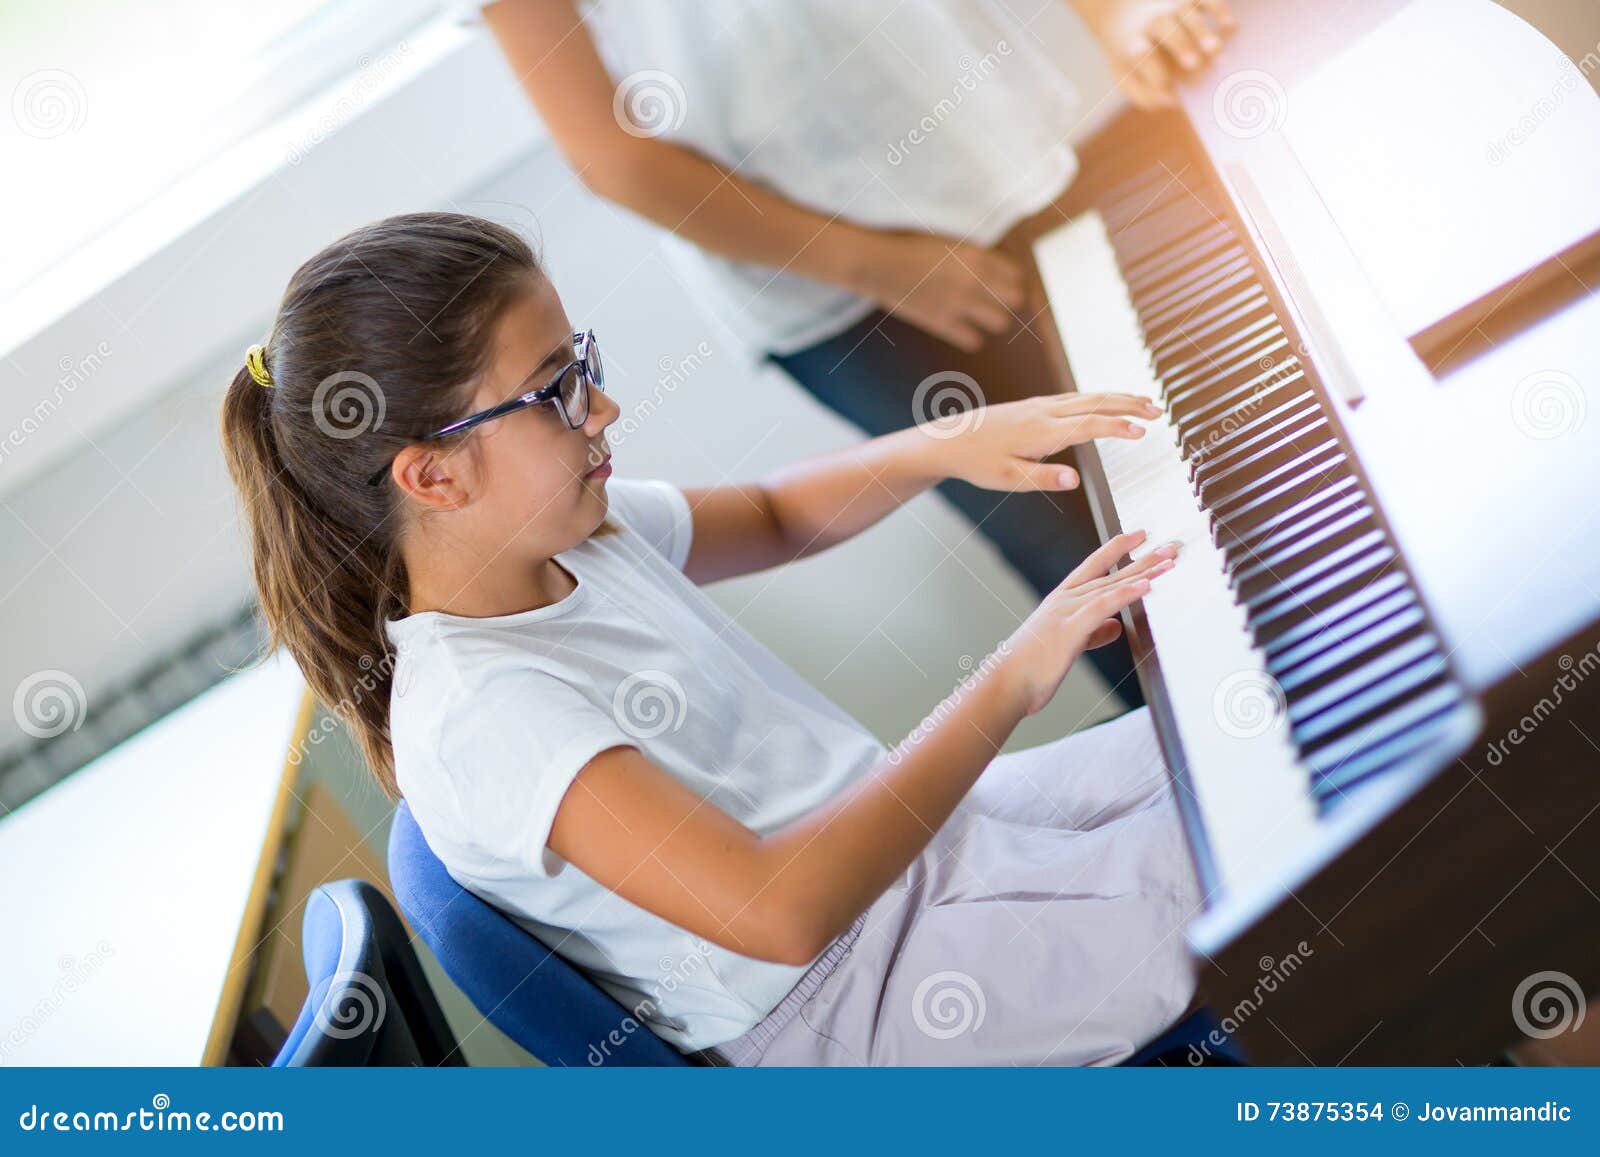 Play Piano